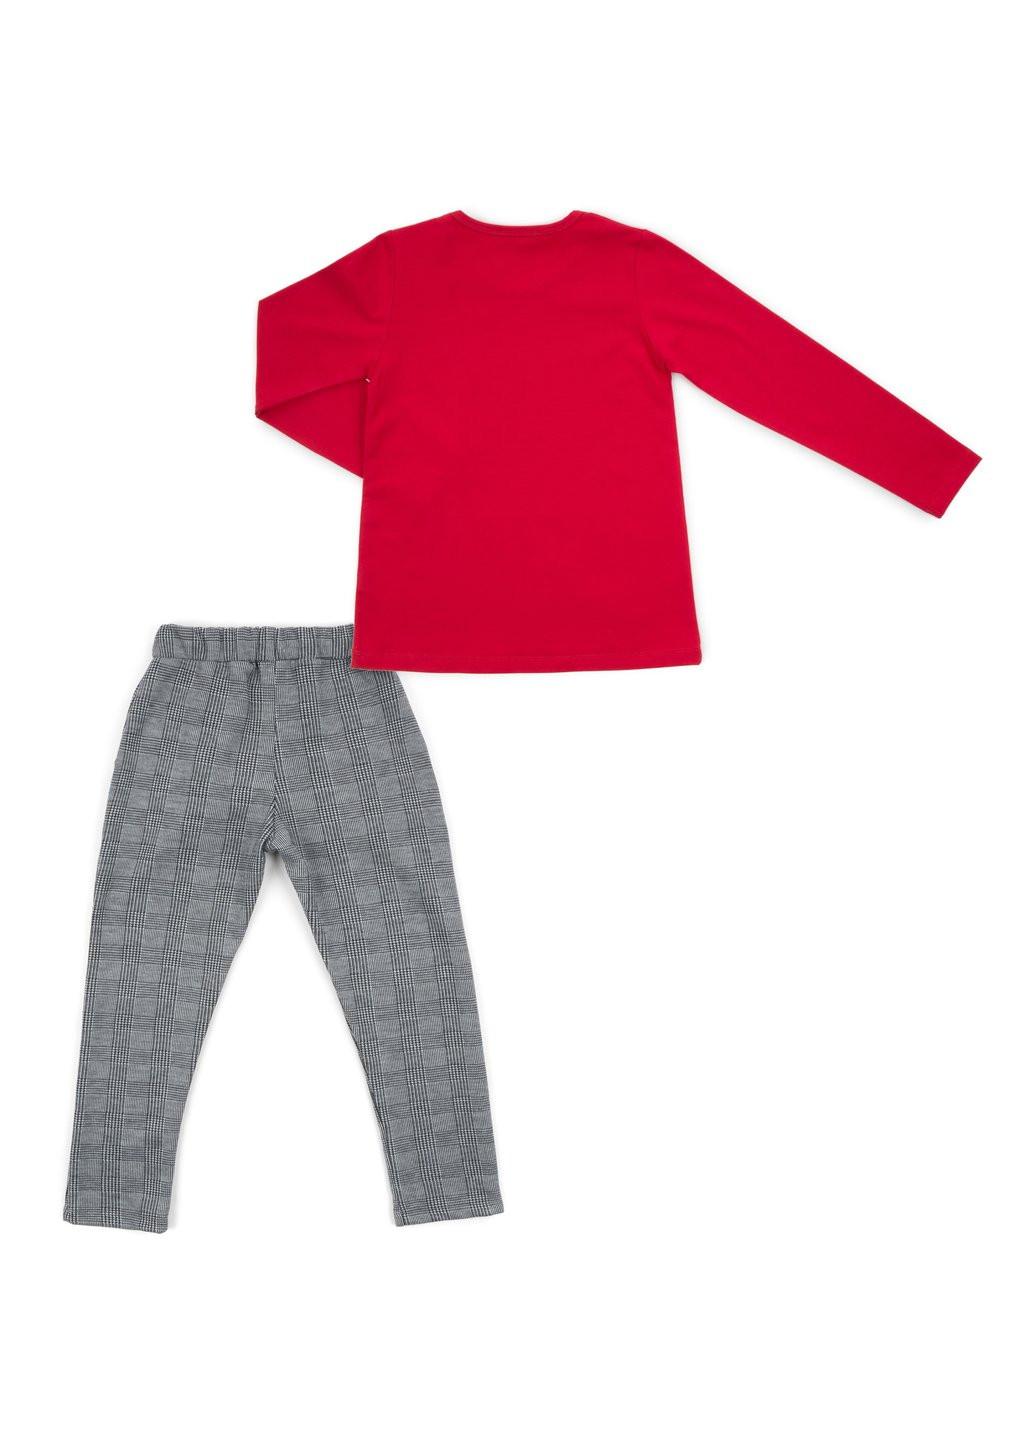 Комбінований демісезонний набір дитячого одягу "always keep positive attitude" (13591-116g-red) Breeze